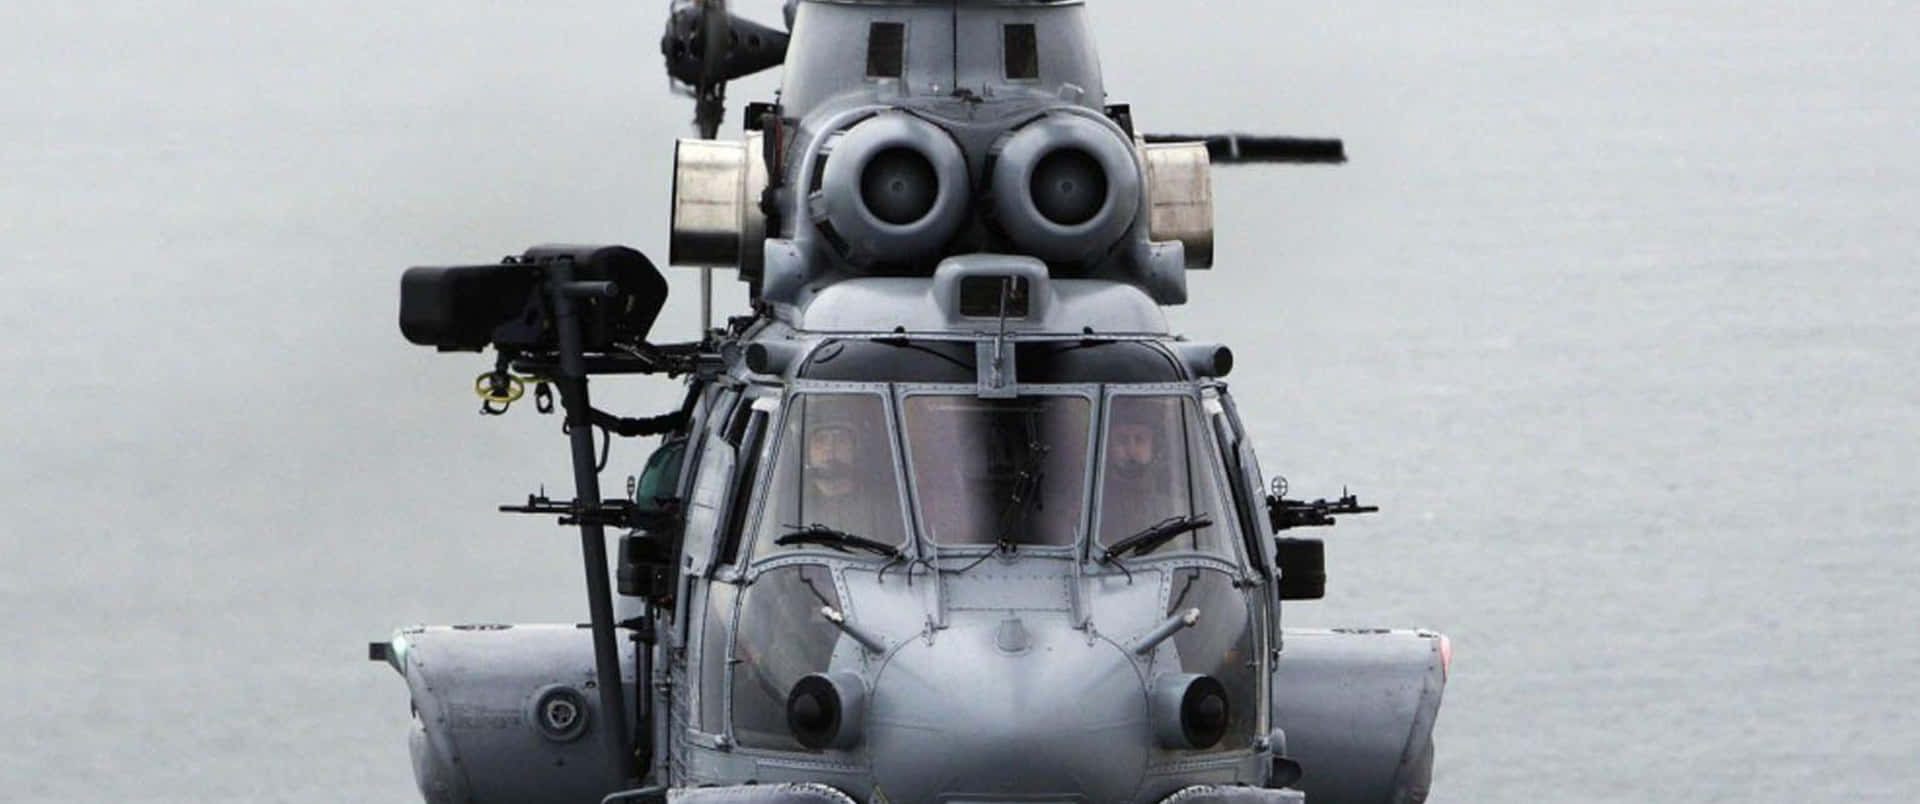 Enhelikopter Flyger Över Vattnet.